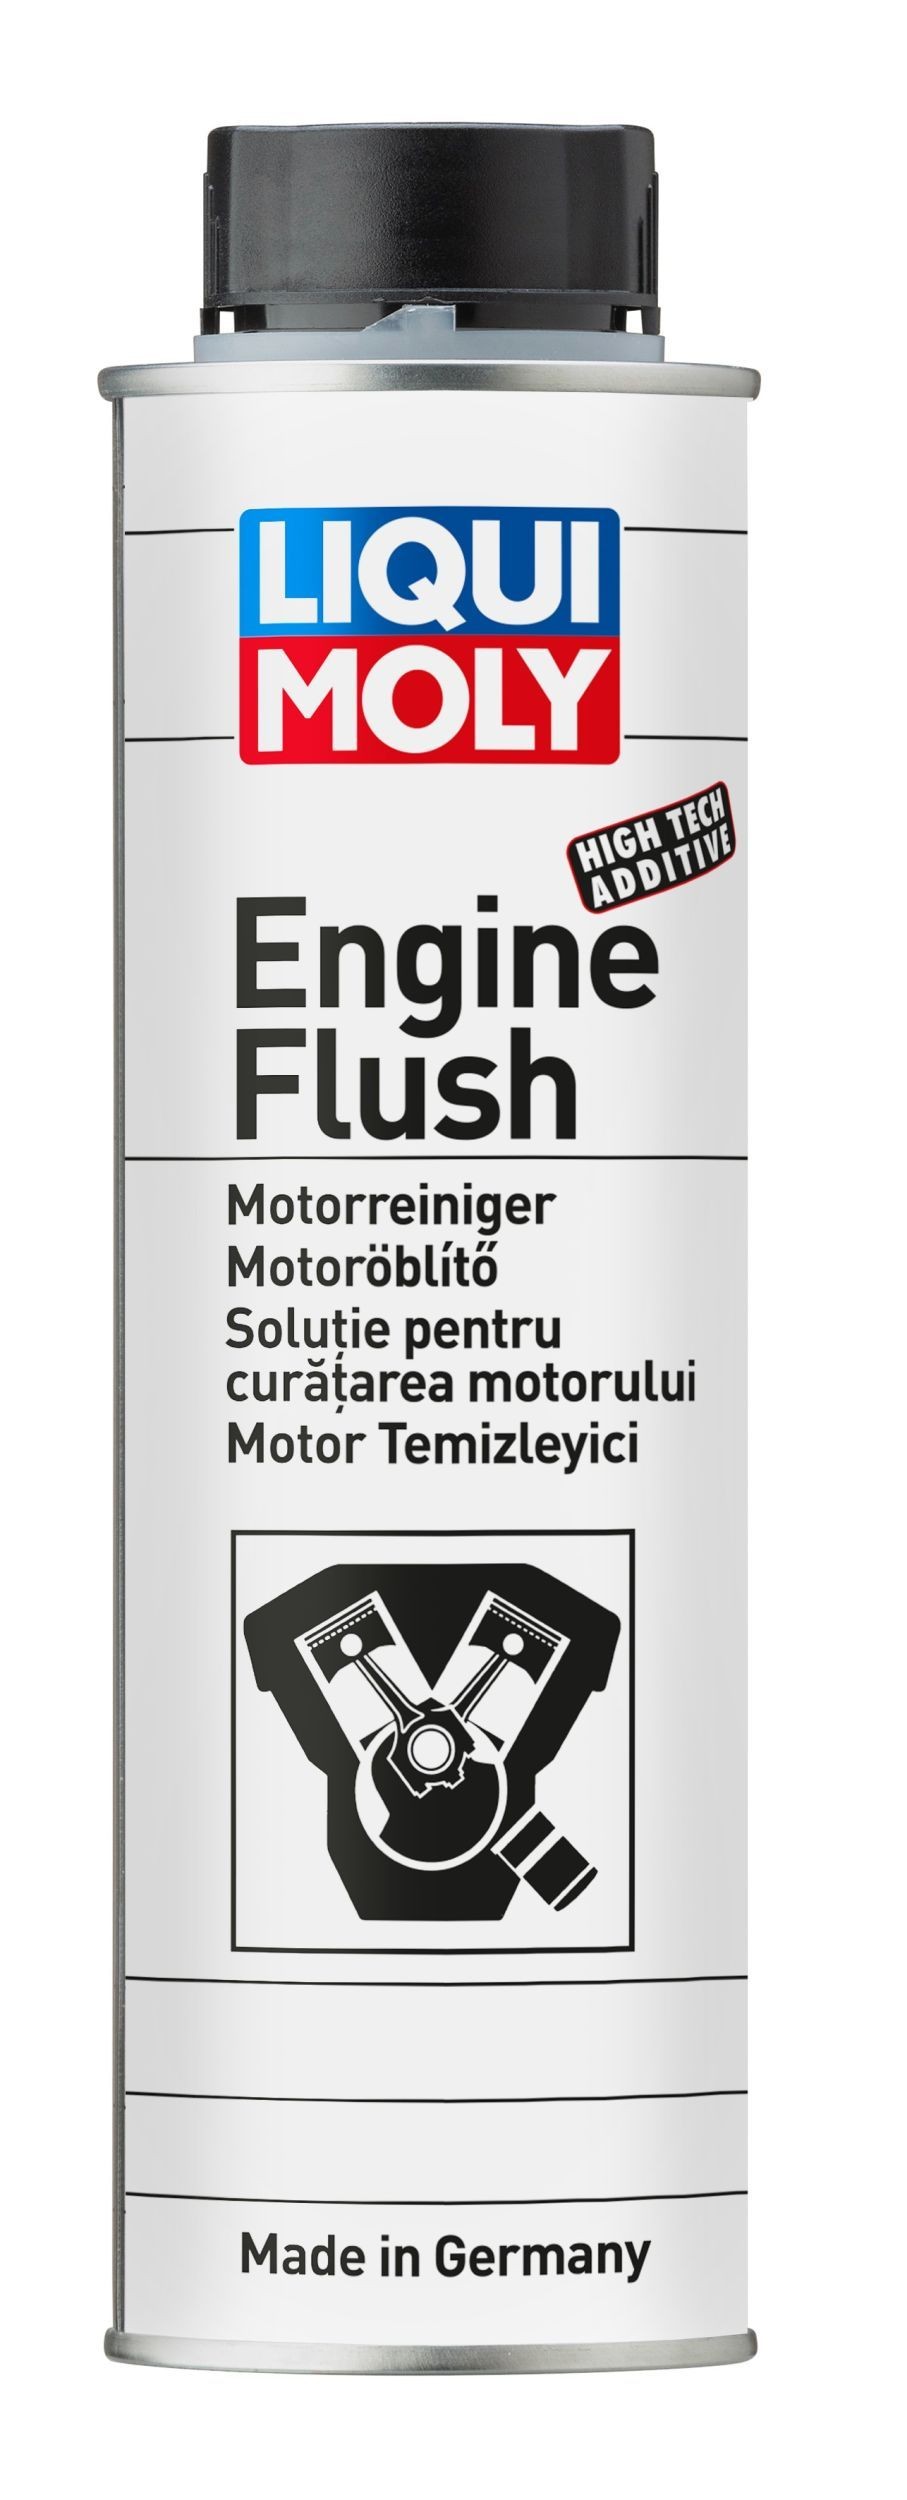 LIQUI MOLY ENGINE FLUSH - Aditivo de limpieza de motor